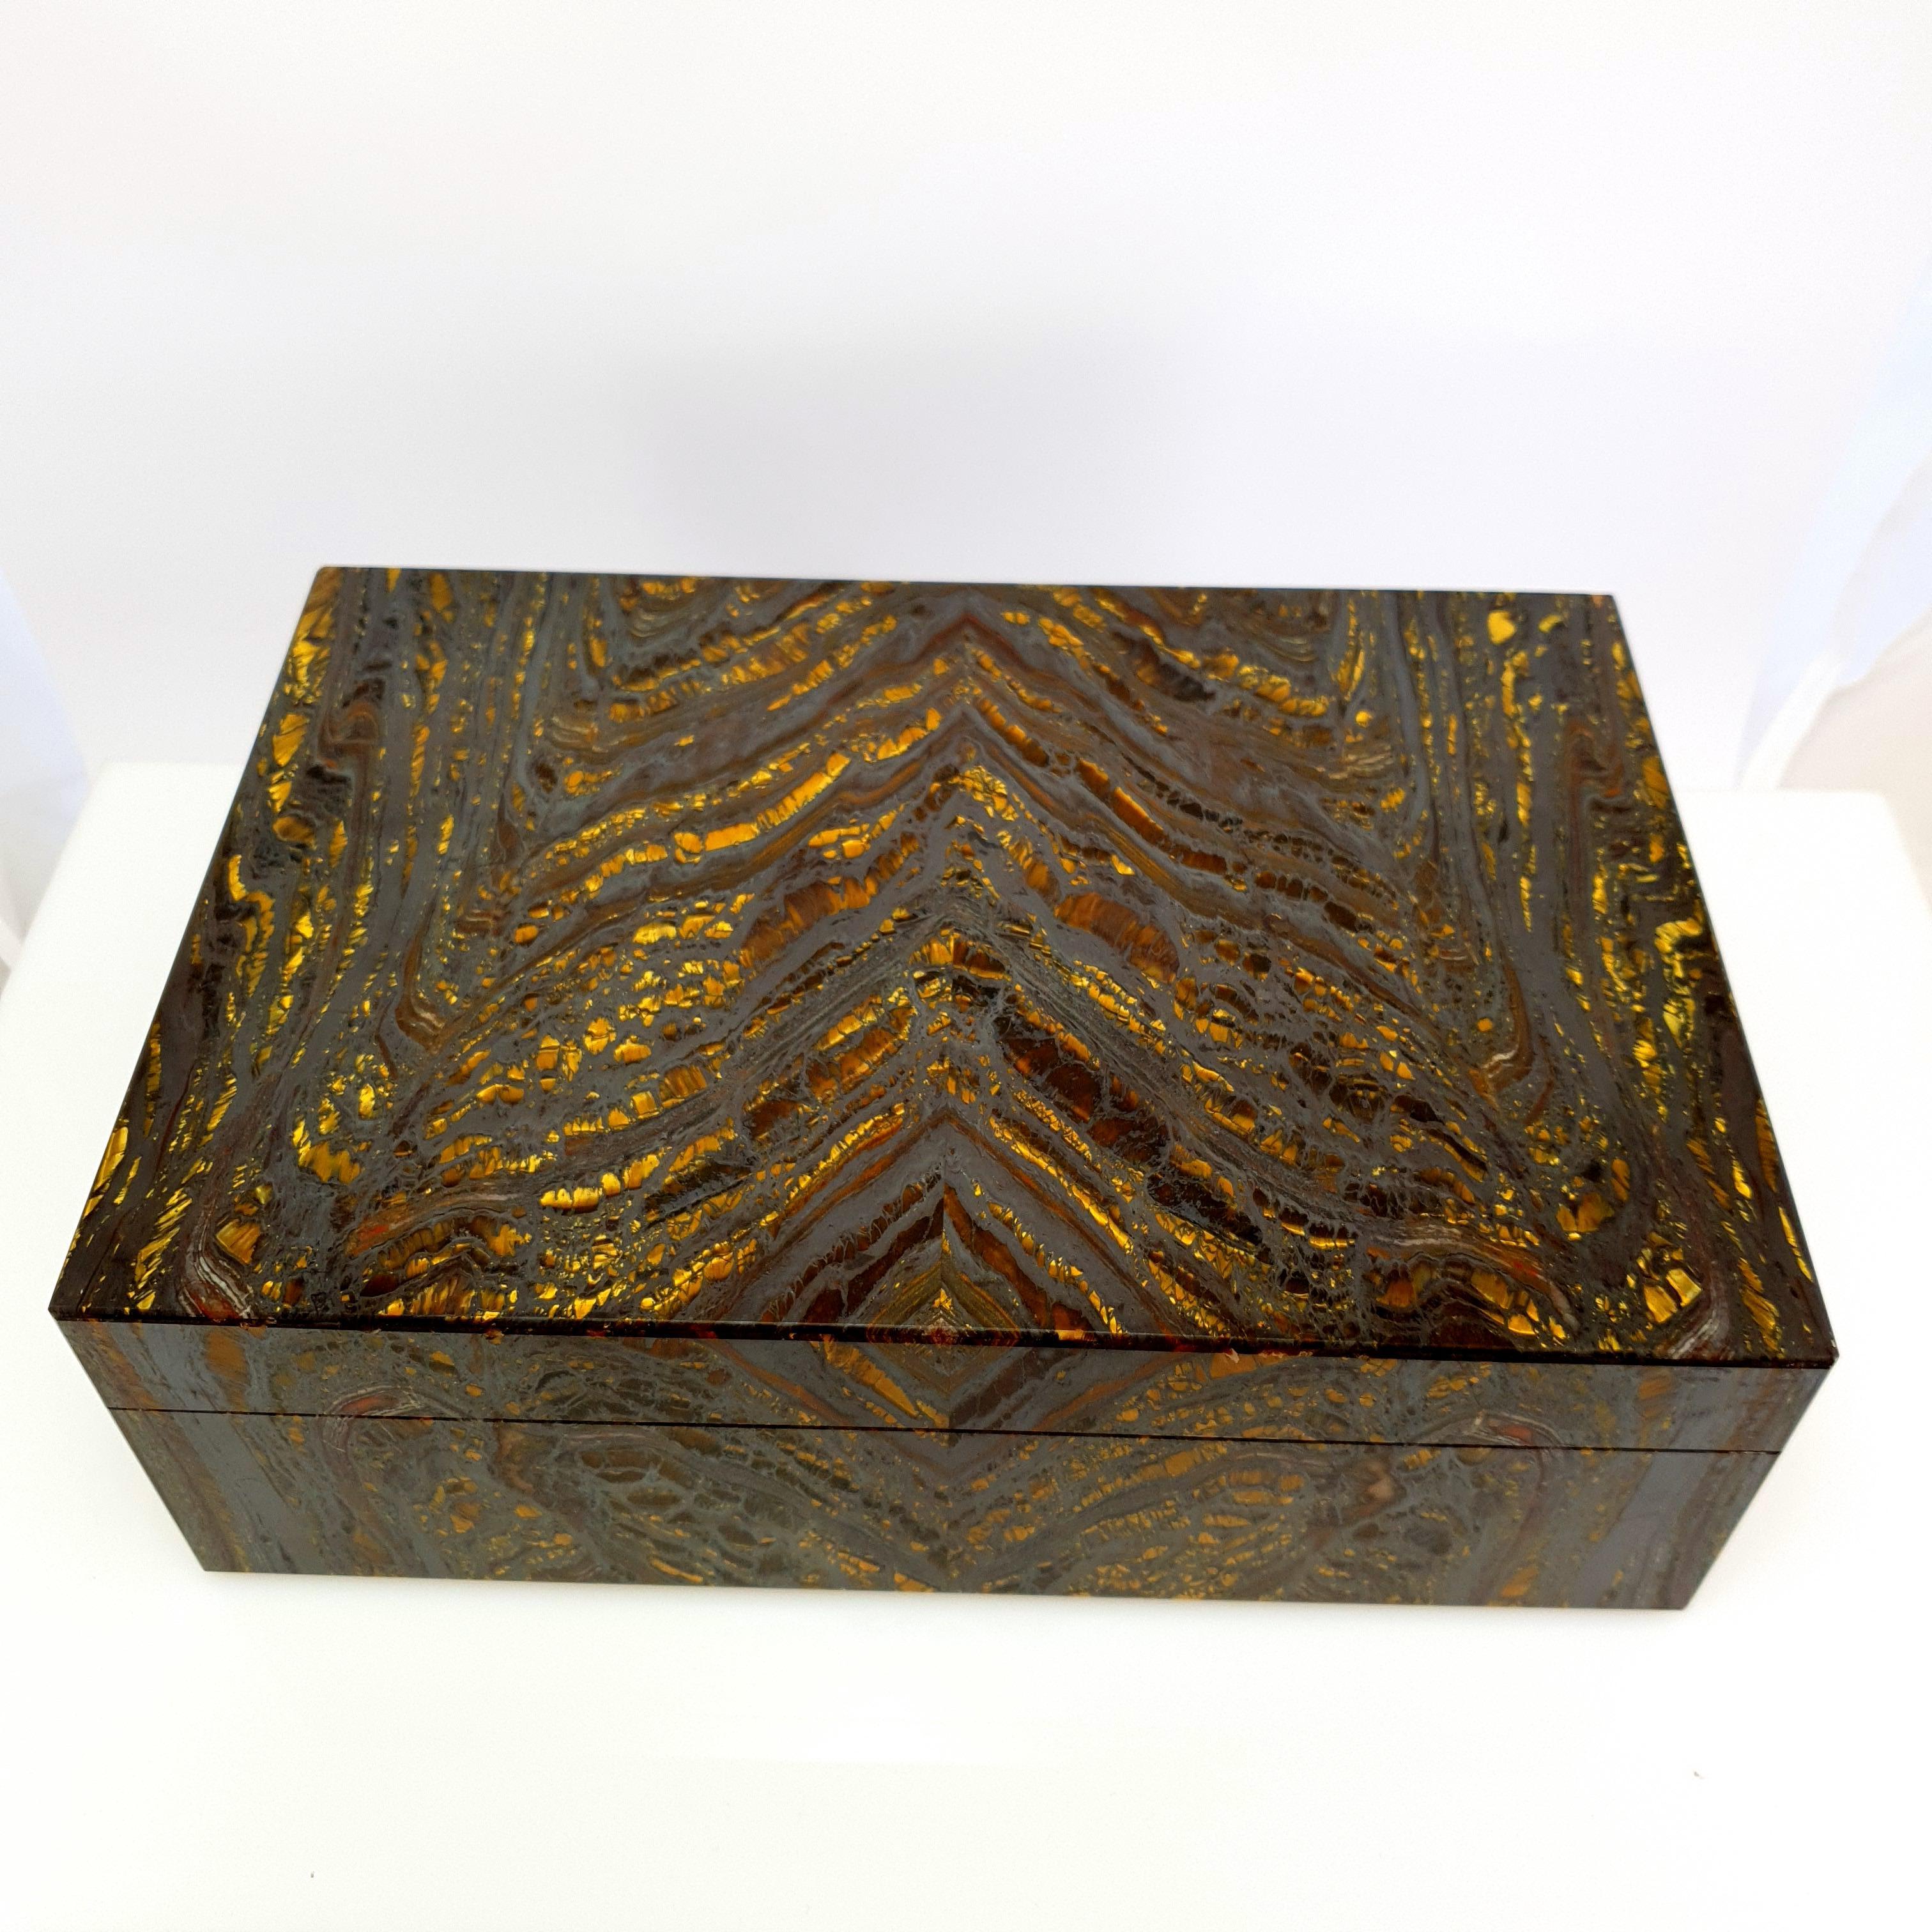 Eine natürliche handgefertigte Gold braun Tiger Eisen dekorativen Schmuck Edelstein-Box mit schwarzem Marmor Inlay.
Die goldbraunen Farbstreifen und das Muster wirken wie ein kunstvolles Gemälde der Natur. 
Es sollte betont werden, dass die obere